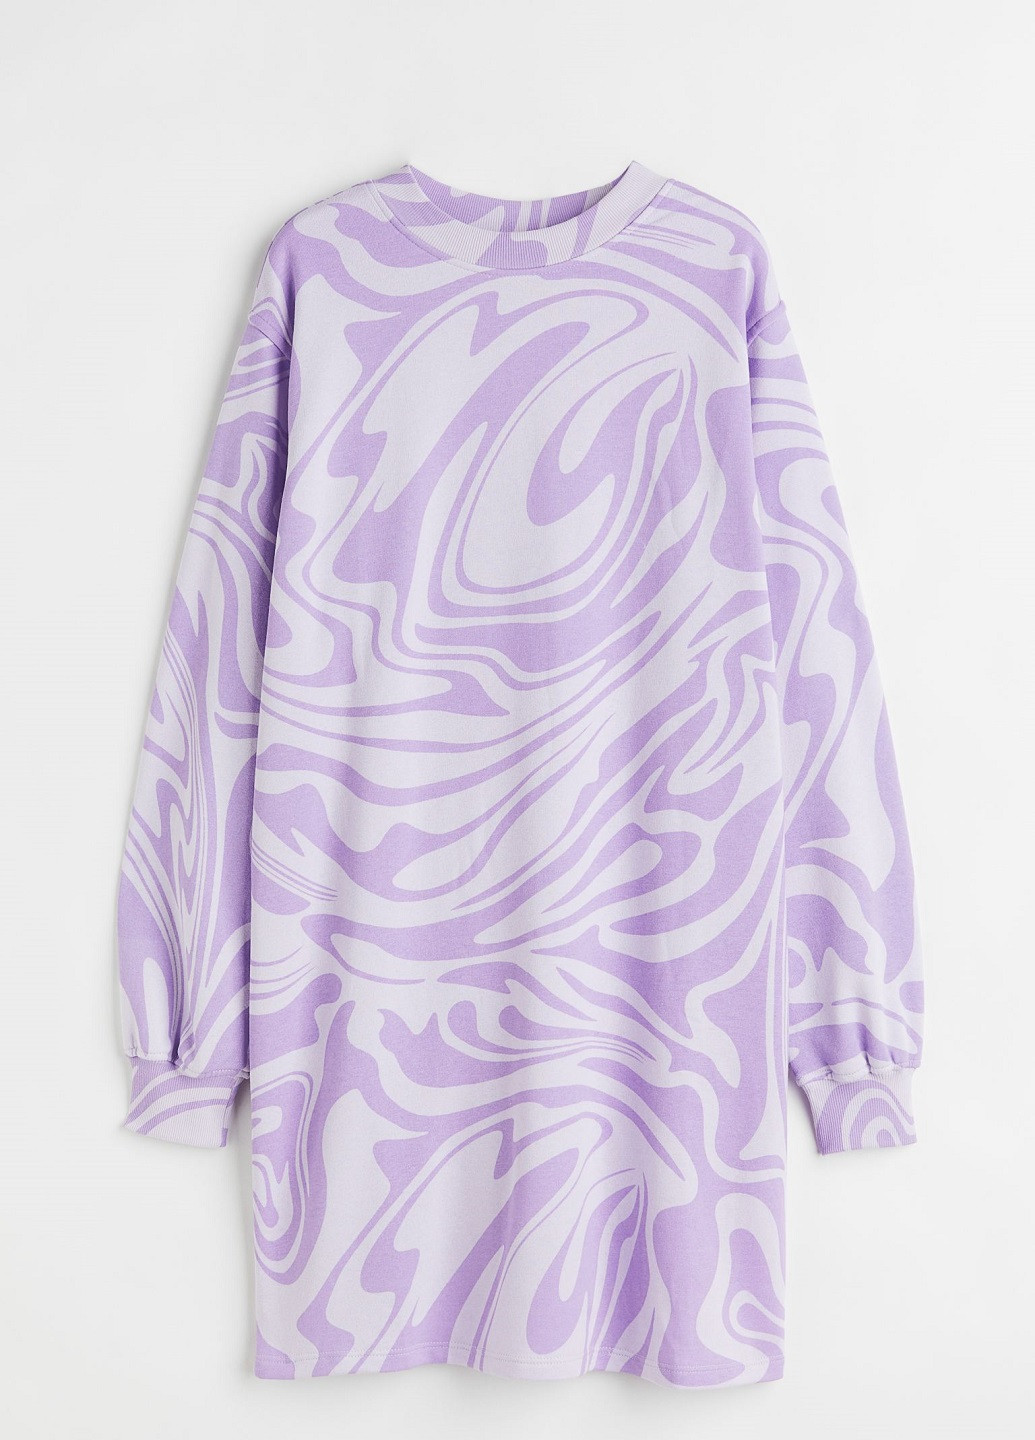 Світло-фіолетова спортивна сукня H&M з абстрактним візерунком